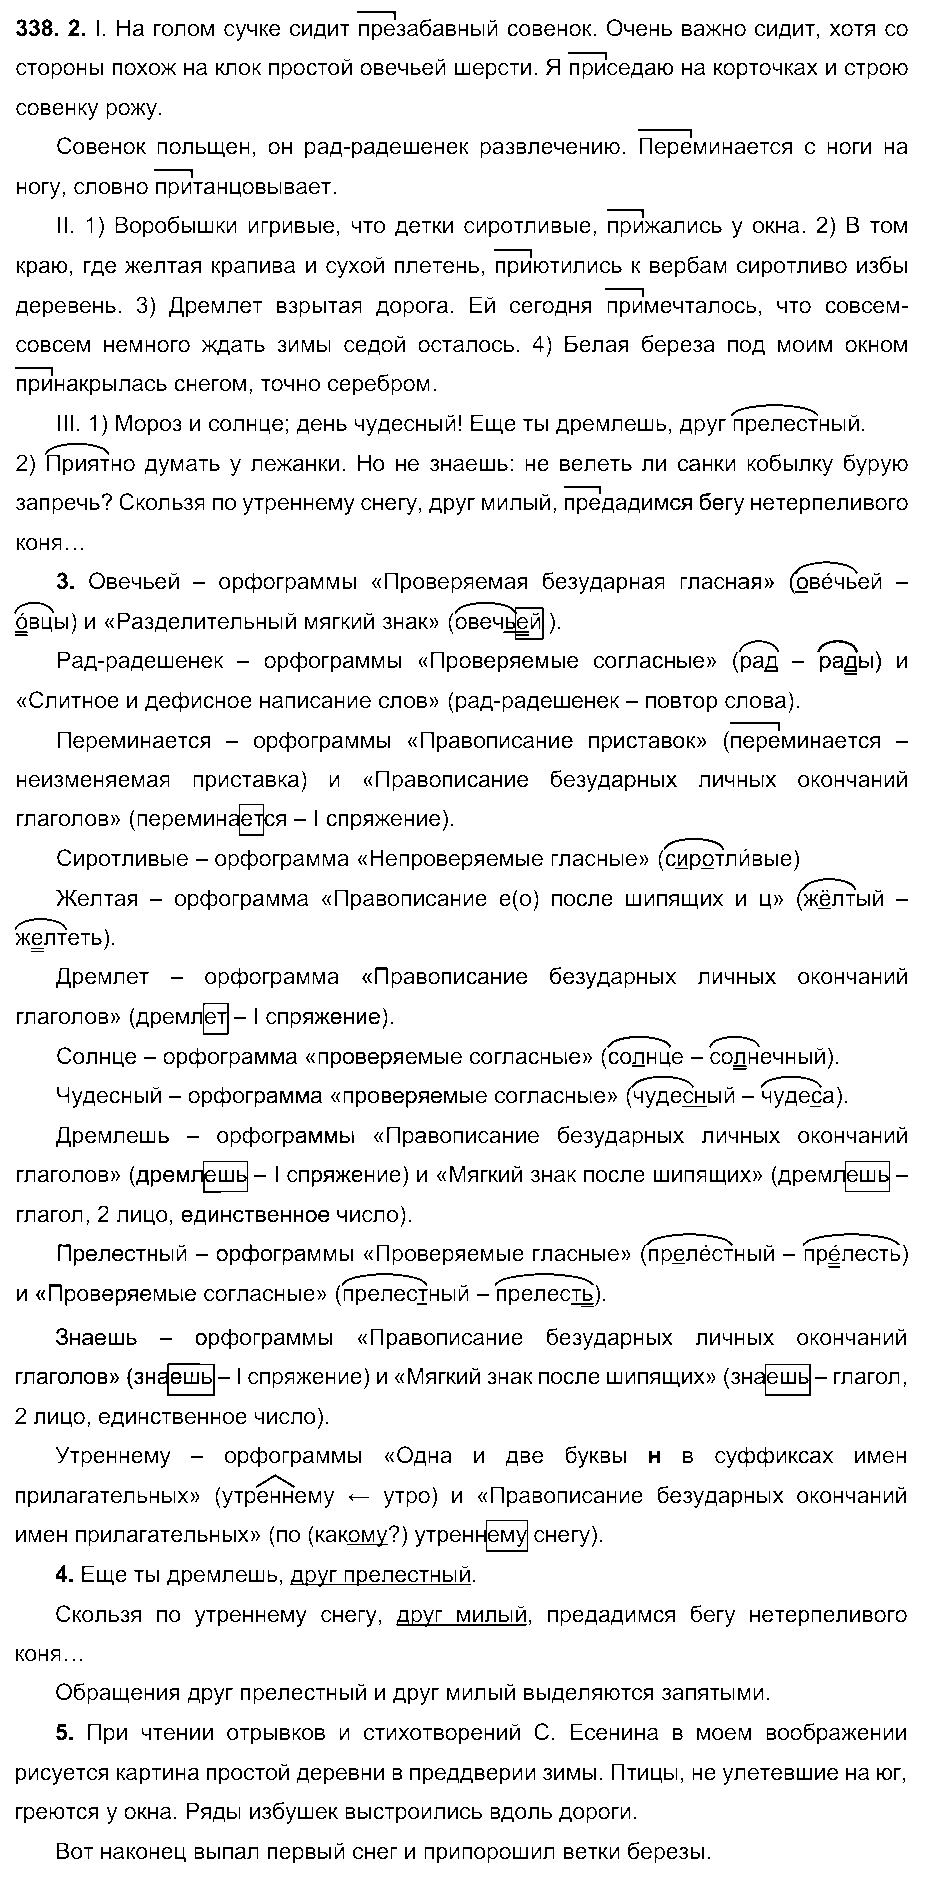 ГДЗ Русский язык 6 класс - 338